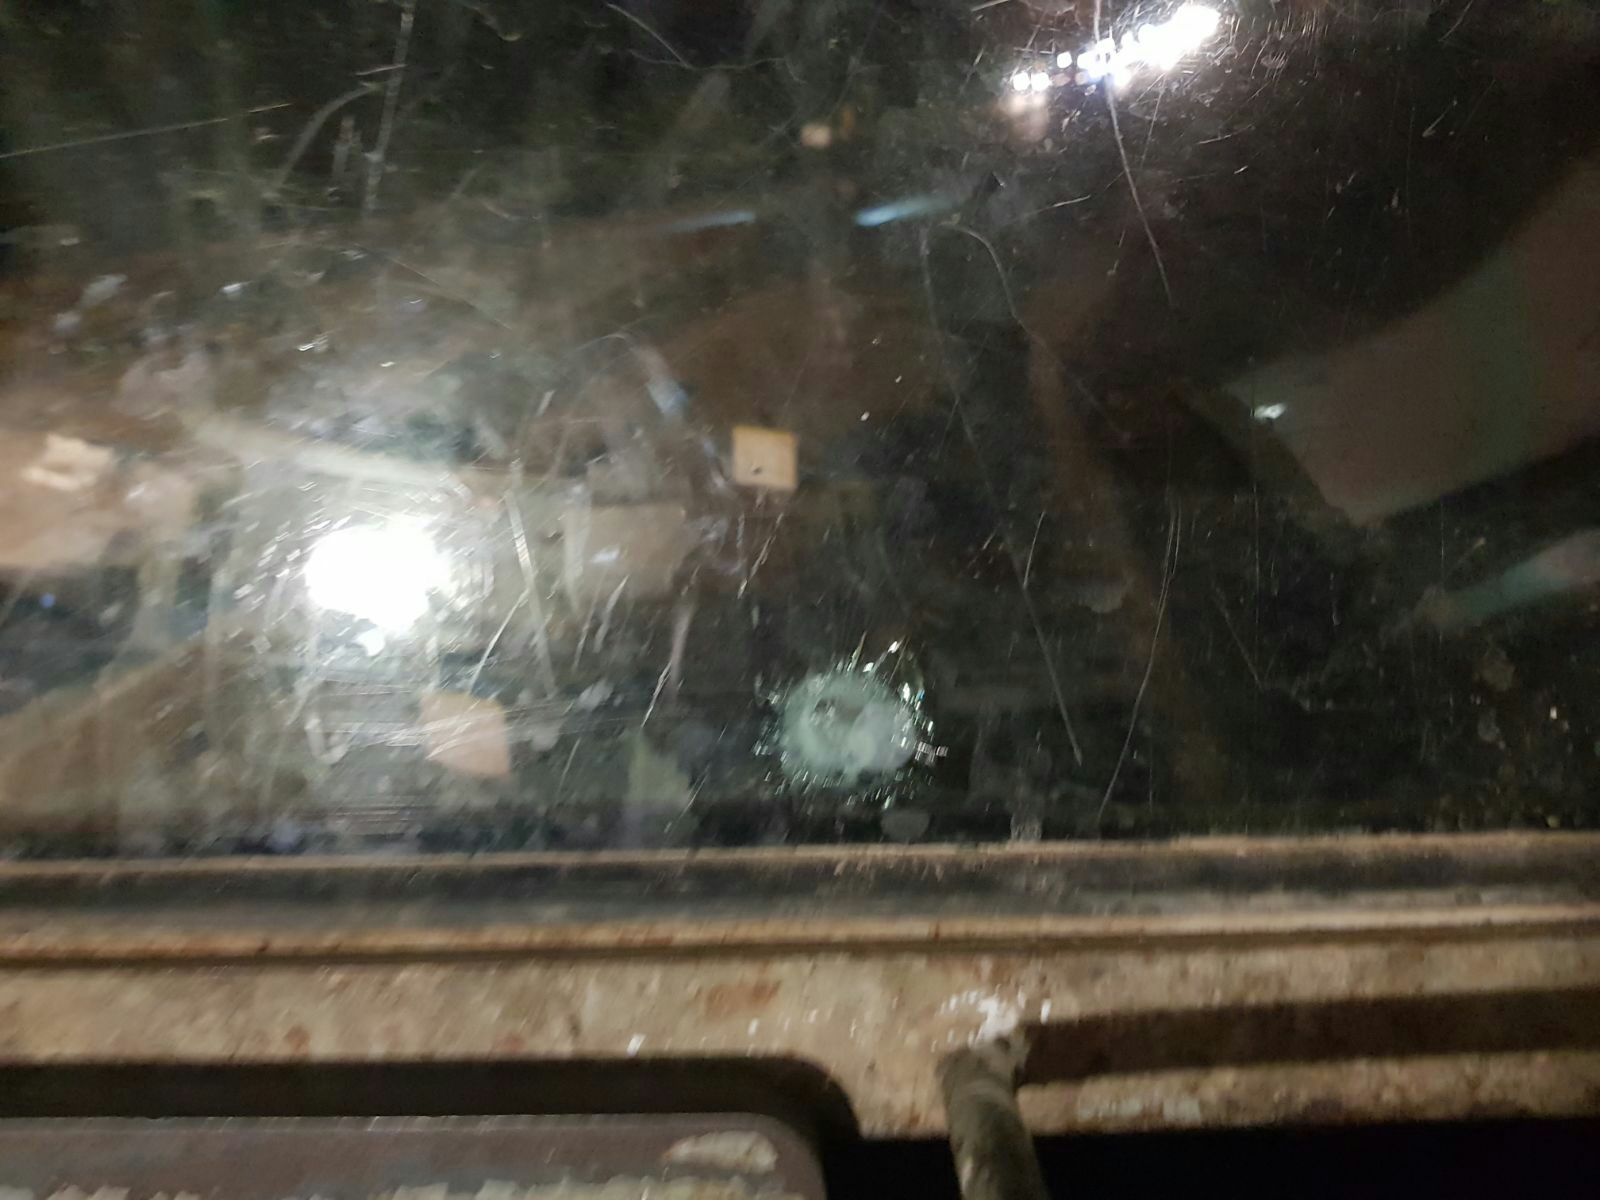 مقاومون يطلقون النار صوب سيارة إسرائيلية شمال القدس المحتلة